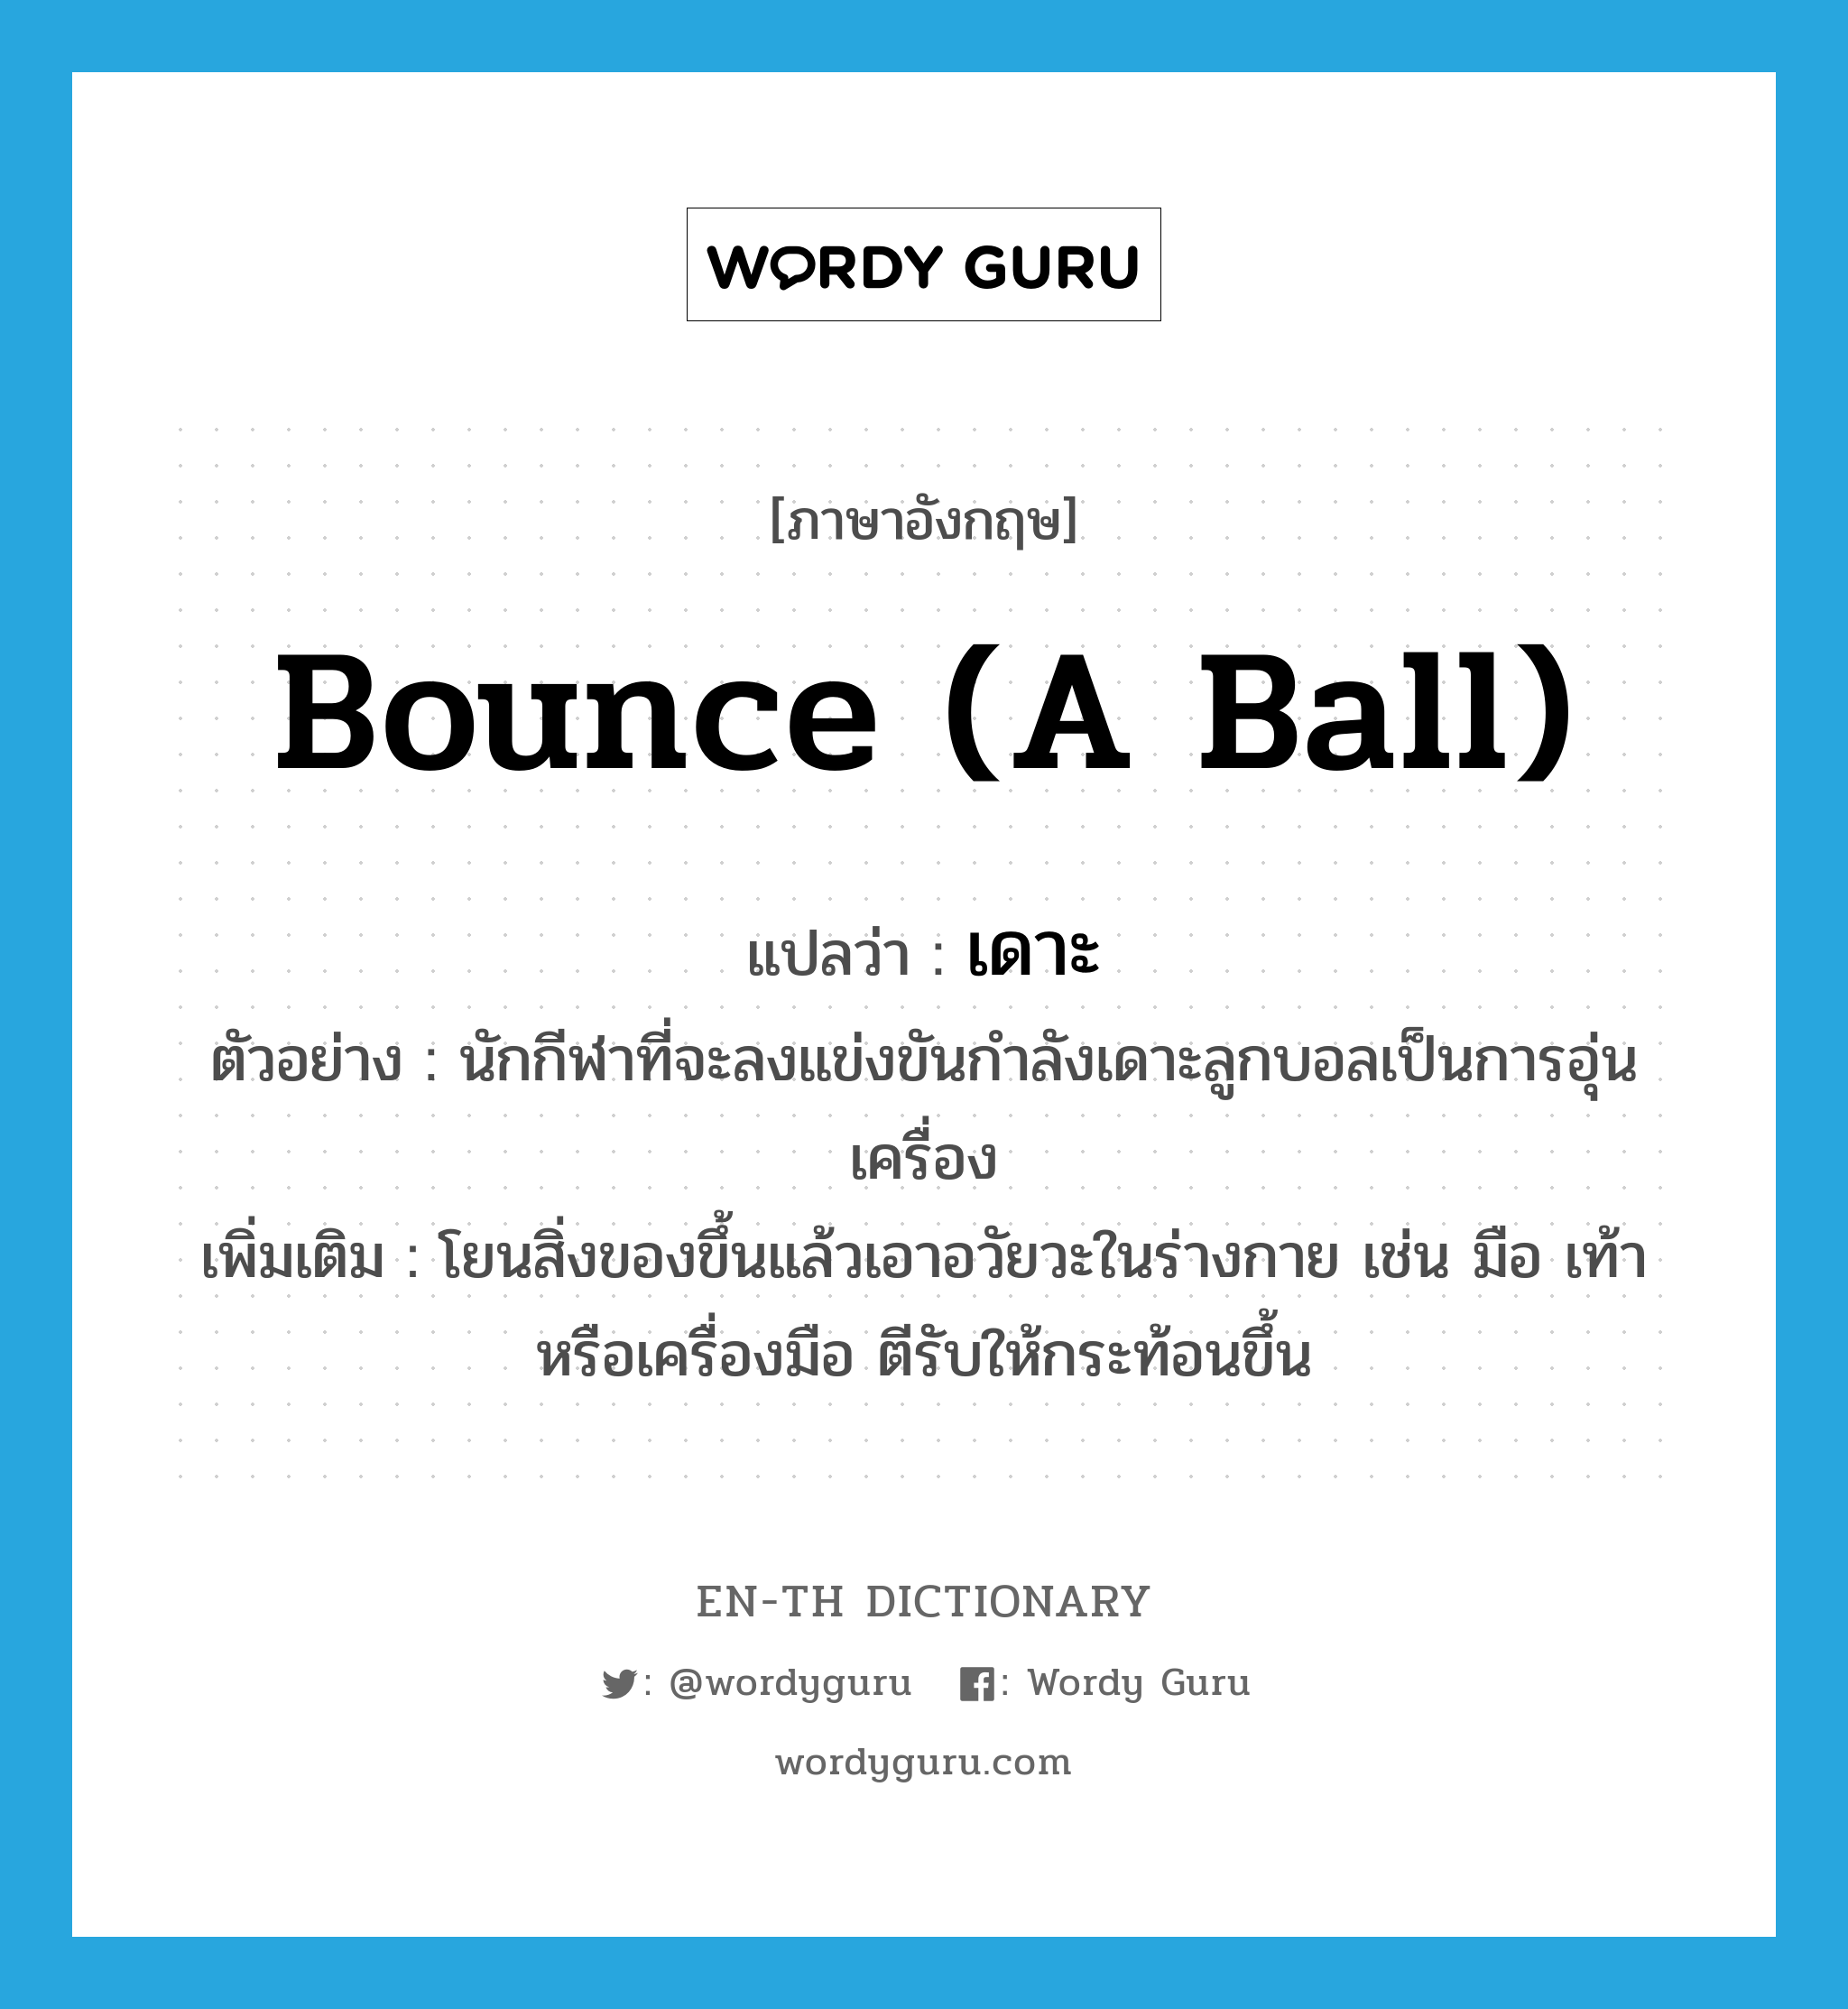 bounce (a ball) แปลว่า?, คำศัพท์ภาษาอังกฤษ bounce (a ball) แปลว่า เดาะ ประเภท V ตัวอย่าง นักกีฬาที่จะลงแข่งขันกำลังเดาะลูกบอลเป็นการอุ่นเครื่อง เพิ่มเติม โยนสิ่งของขึ้นแล้วเอาอวัยวะในร่างกาย เช่น มือ เท้า หรือเครื่องมือ ตีรับให้กระท้อนขึ้น หมวด V